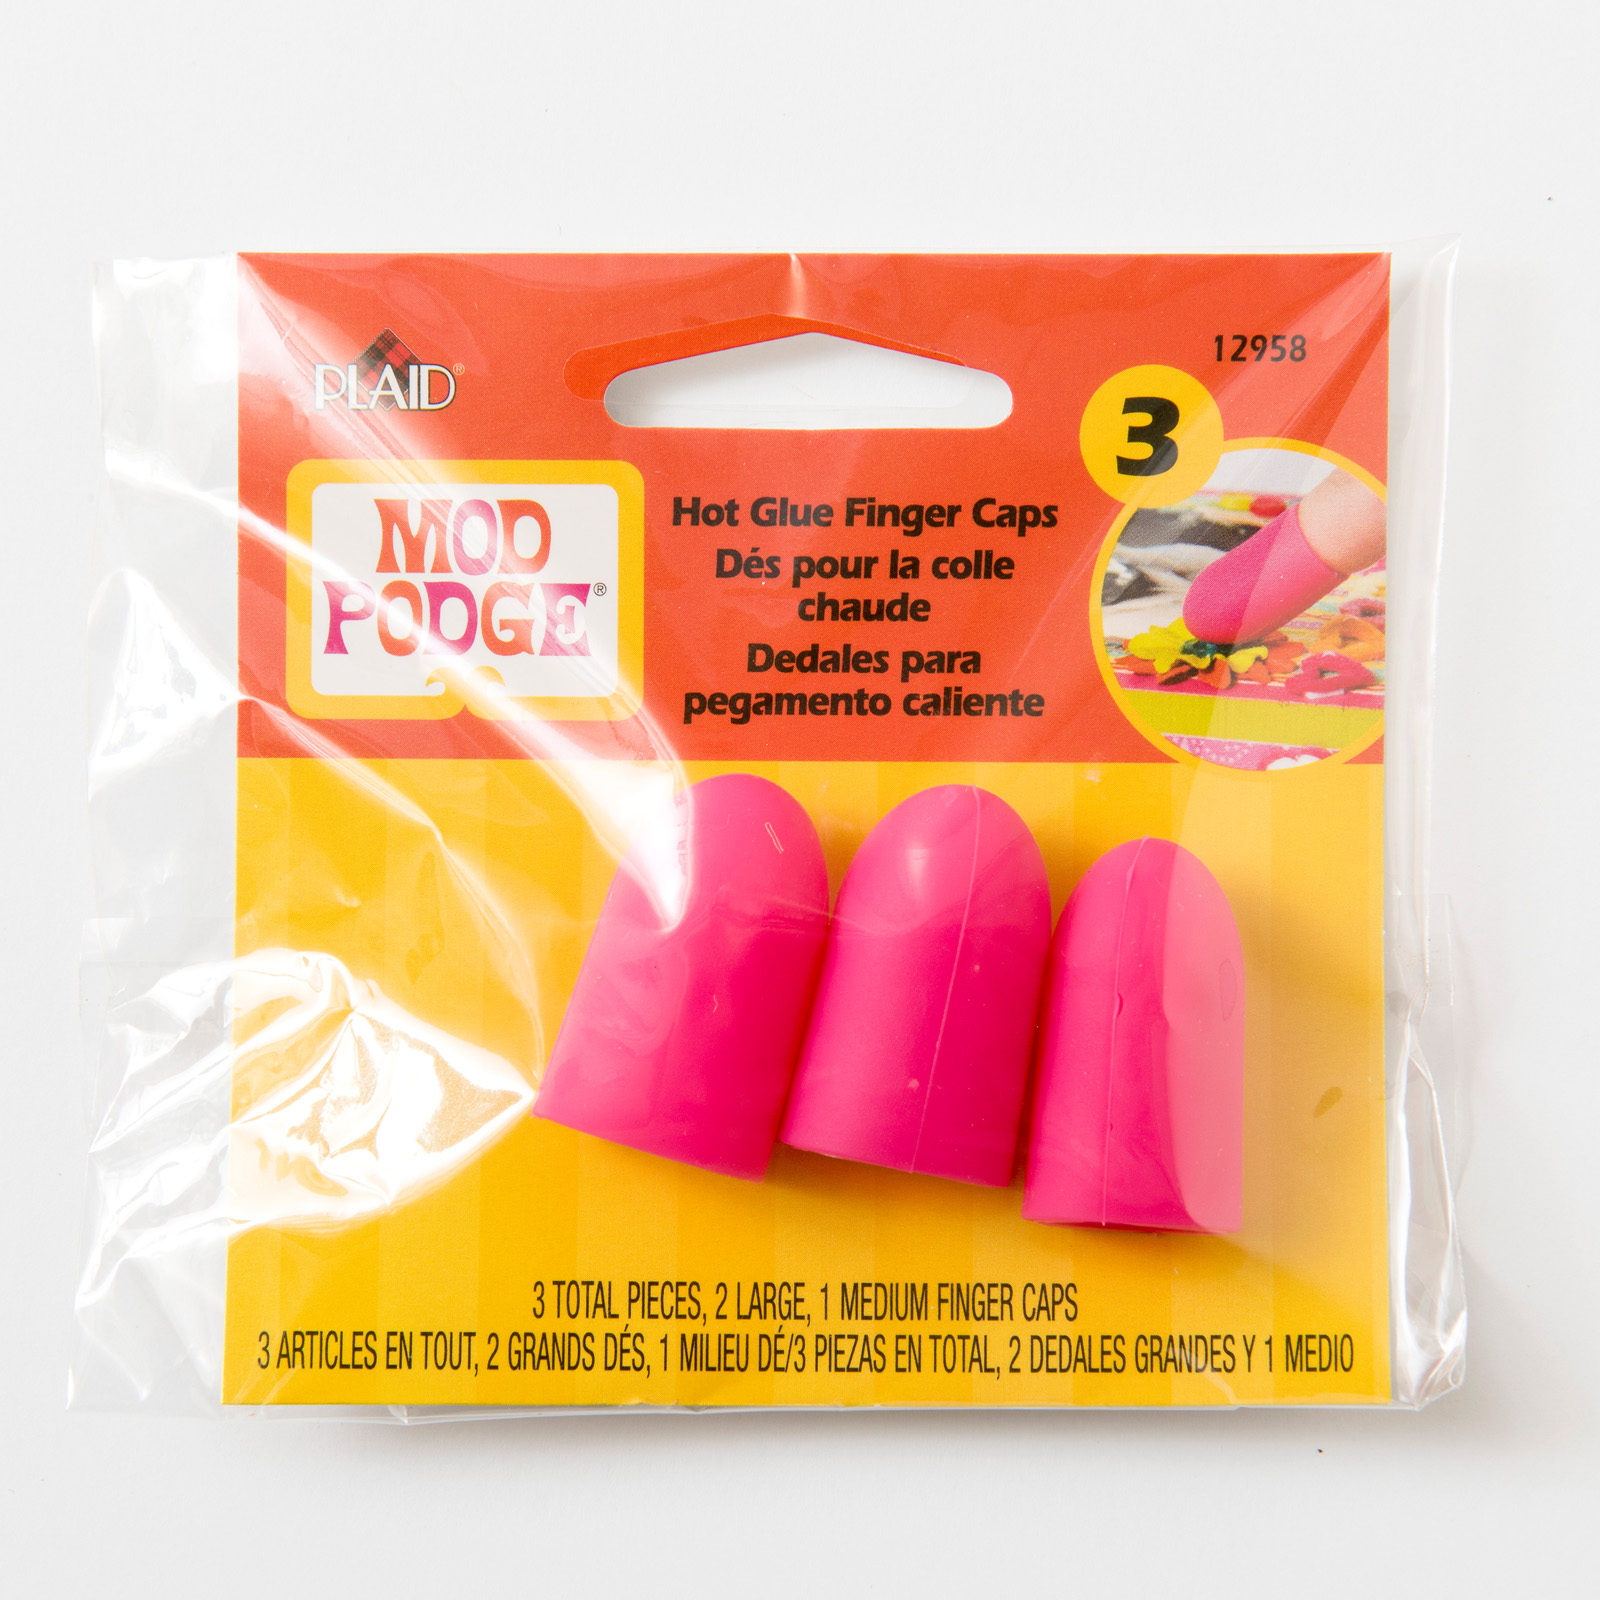 Mod Podge • Hot Glue Finger Caps 3pieces